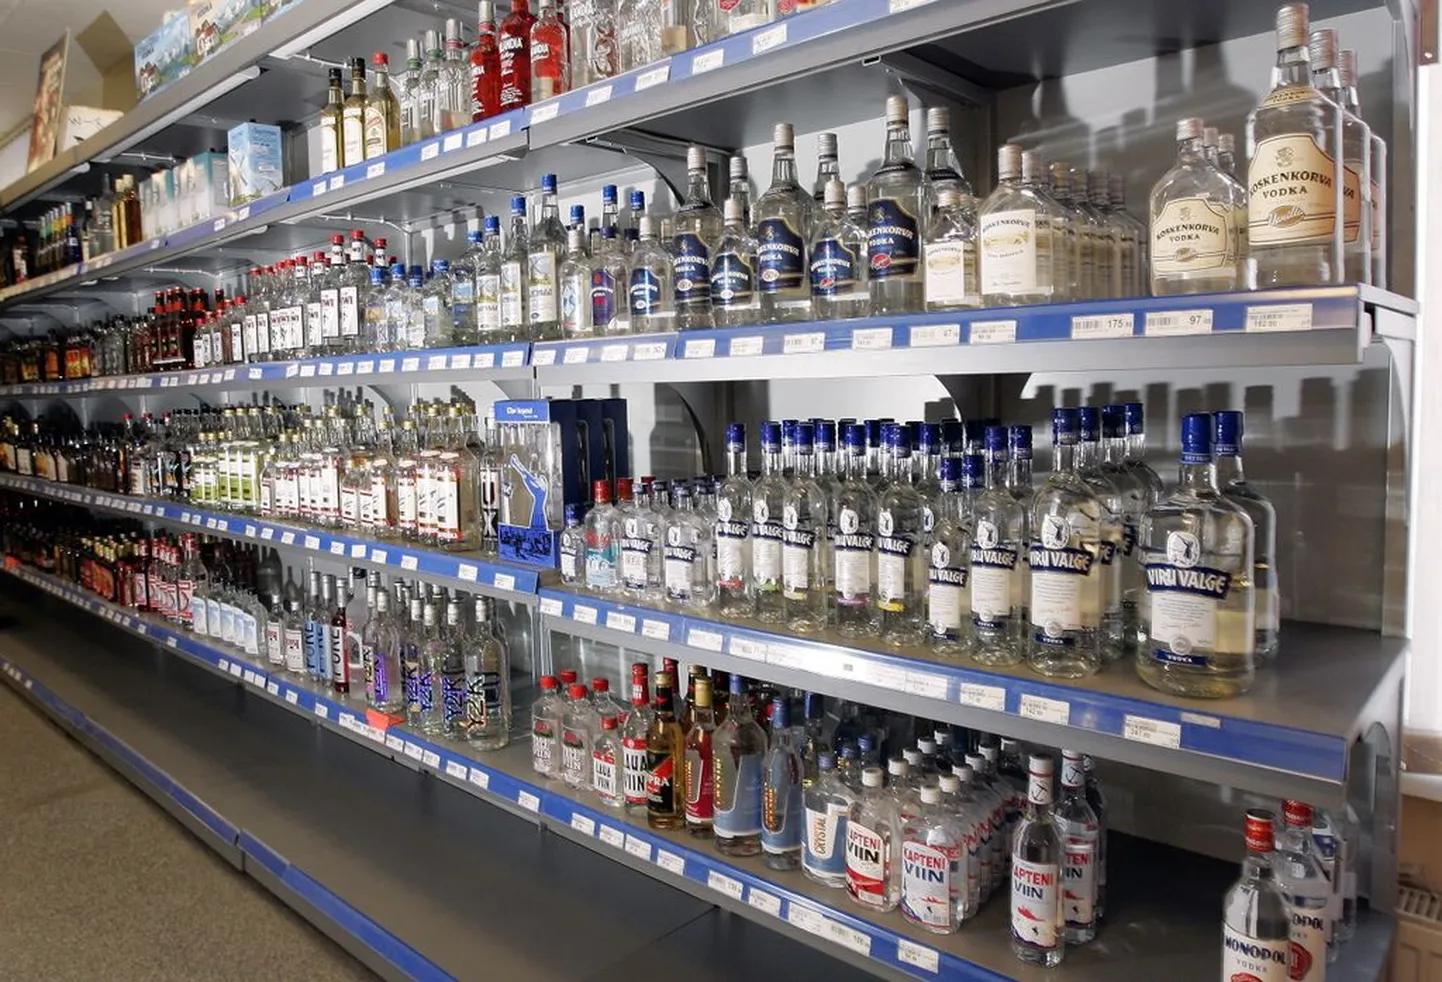 Soome Islamipartei kavatseb toetada alkoholimüügi keelustamist supermarketites.